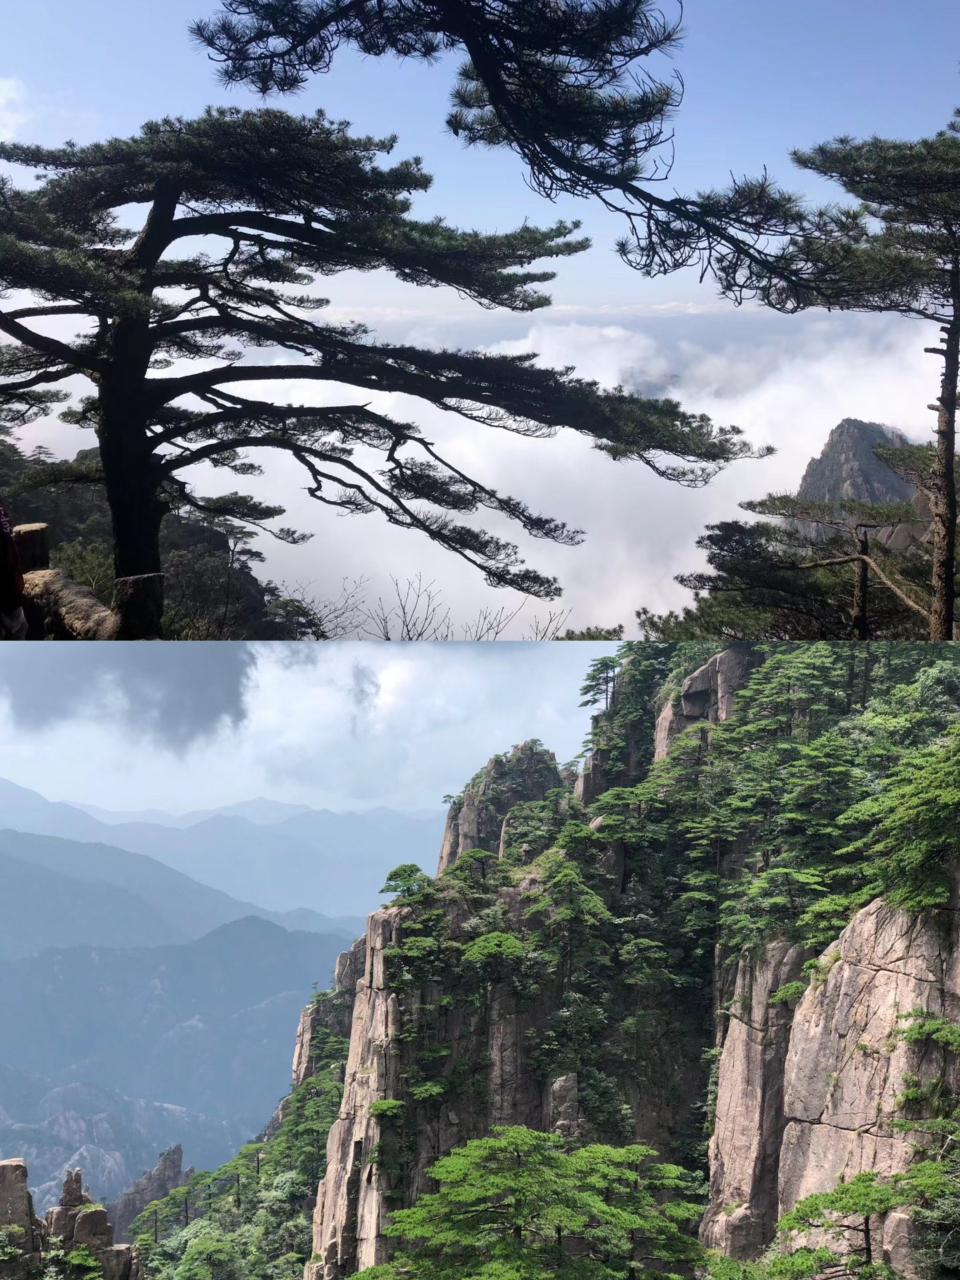 中国十大风景名胜图片图片